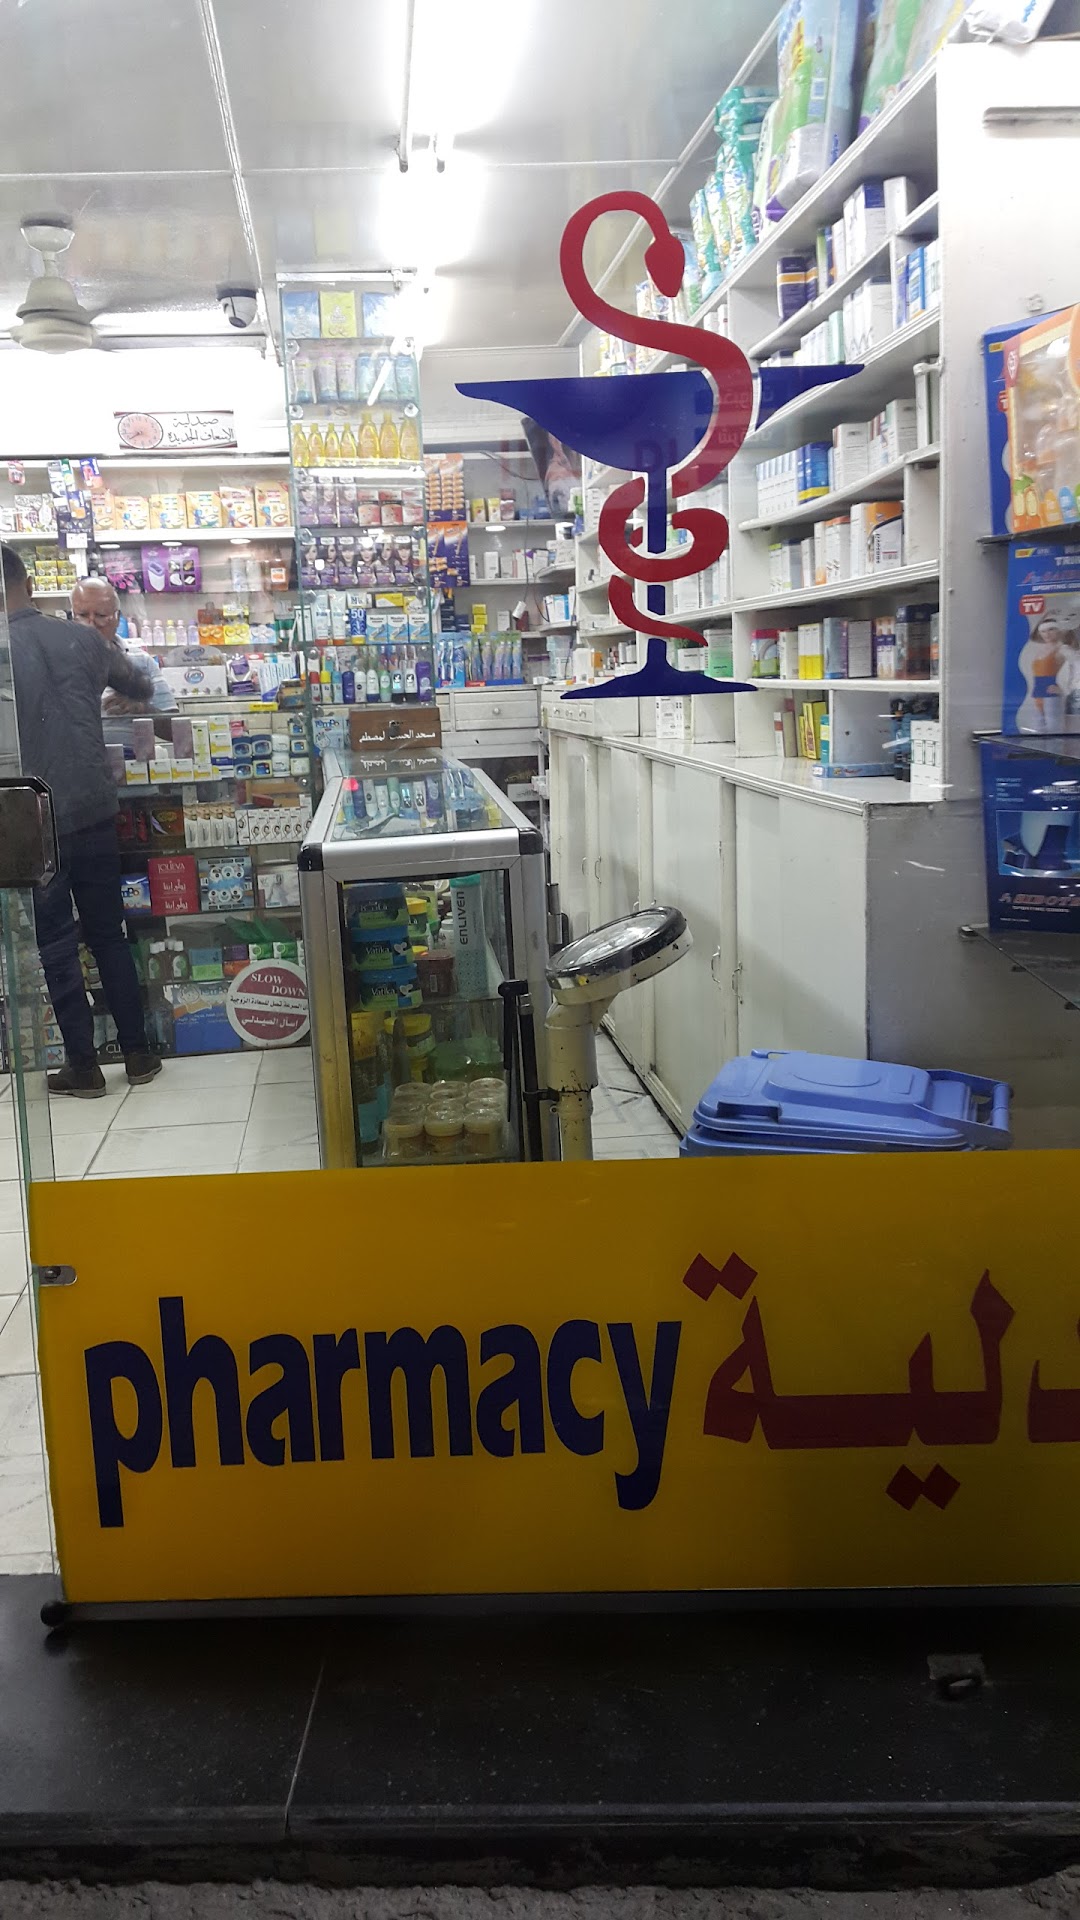 El Esaaf Elgedida Pharmacy